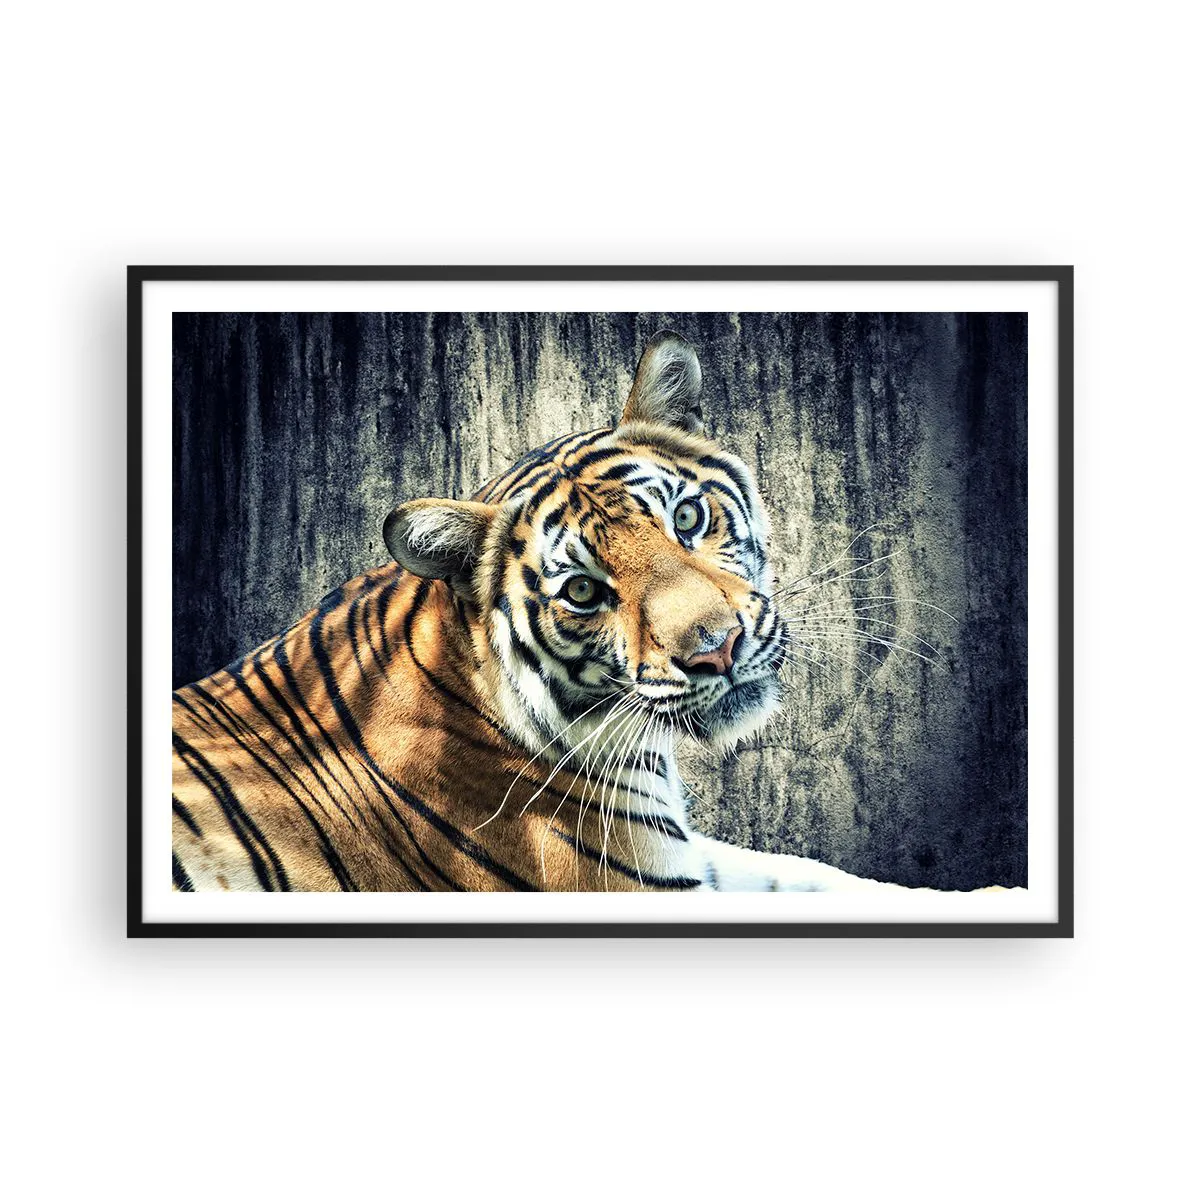 Poster in einem schwarzem Rahmen Arttor 100x70 cm - Portrait in Lichtstrahlen - Tiere, Tiger, Afrika, Wildes Tier, Indien, Ins Wohnzimmer, Für Schlafzimmer, Weiß, Braun, Horizontal, P2BAA100x70-2464